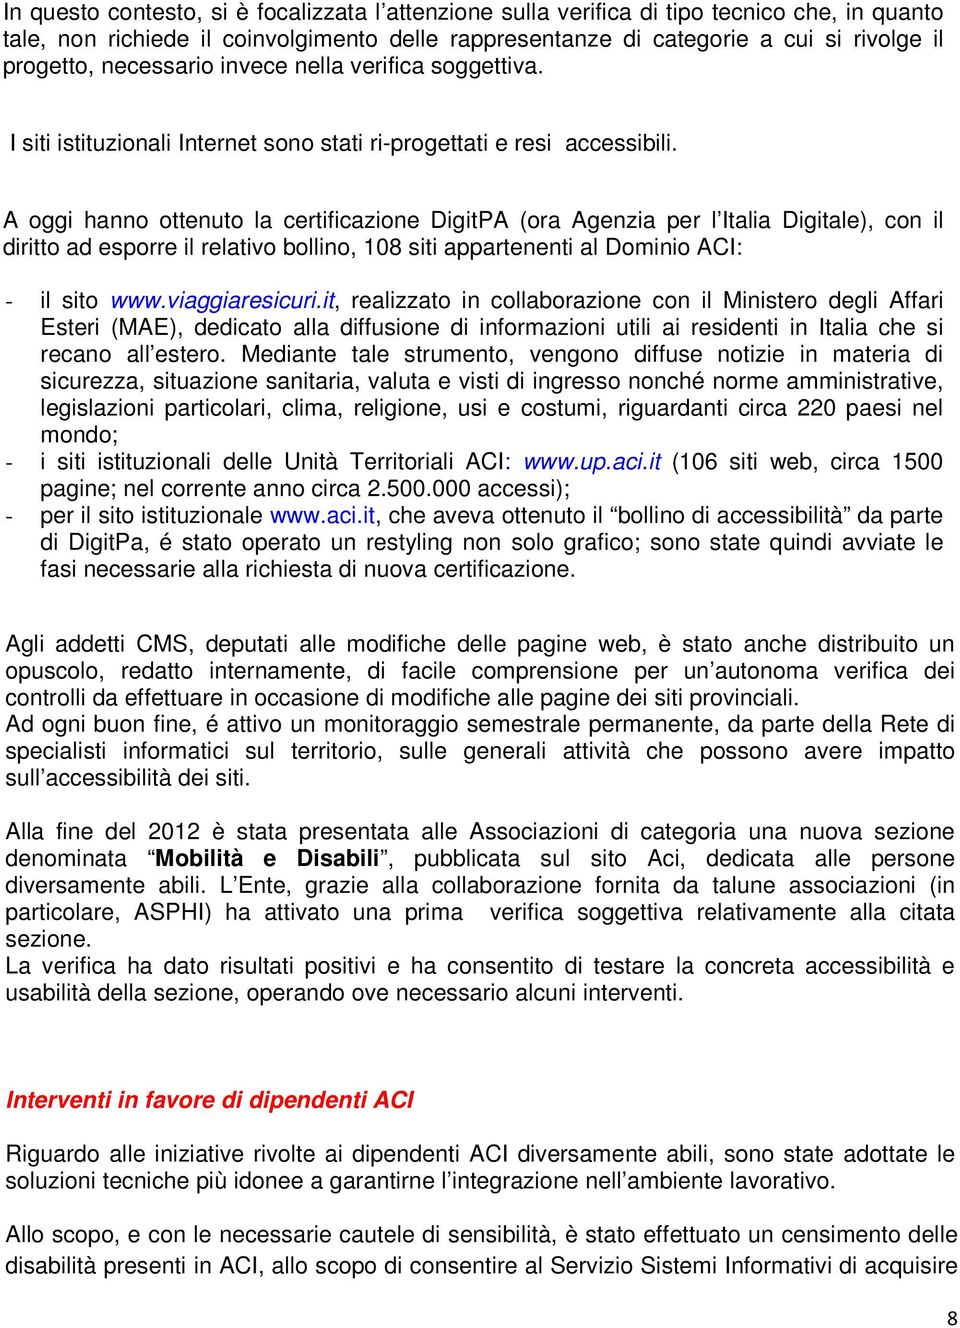 A oggi hanno ottenuto la certificazione DigitPA (ora Agenzia per l Italia Digitale), con il diritto ad esporre il relativo bollino, 108 siti appartenenti al Dominio ACI: - il sito www.viaggiaresicuri.